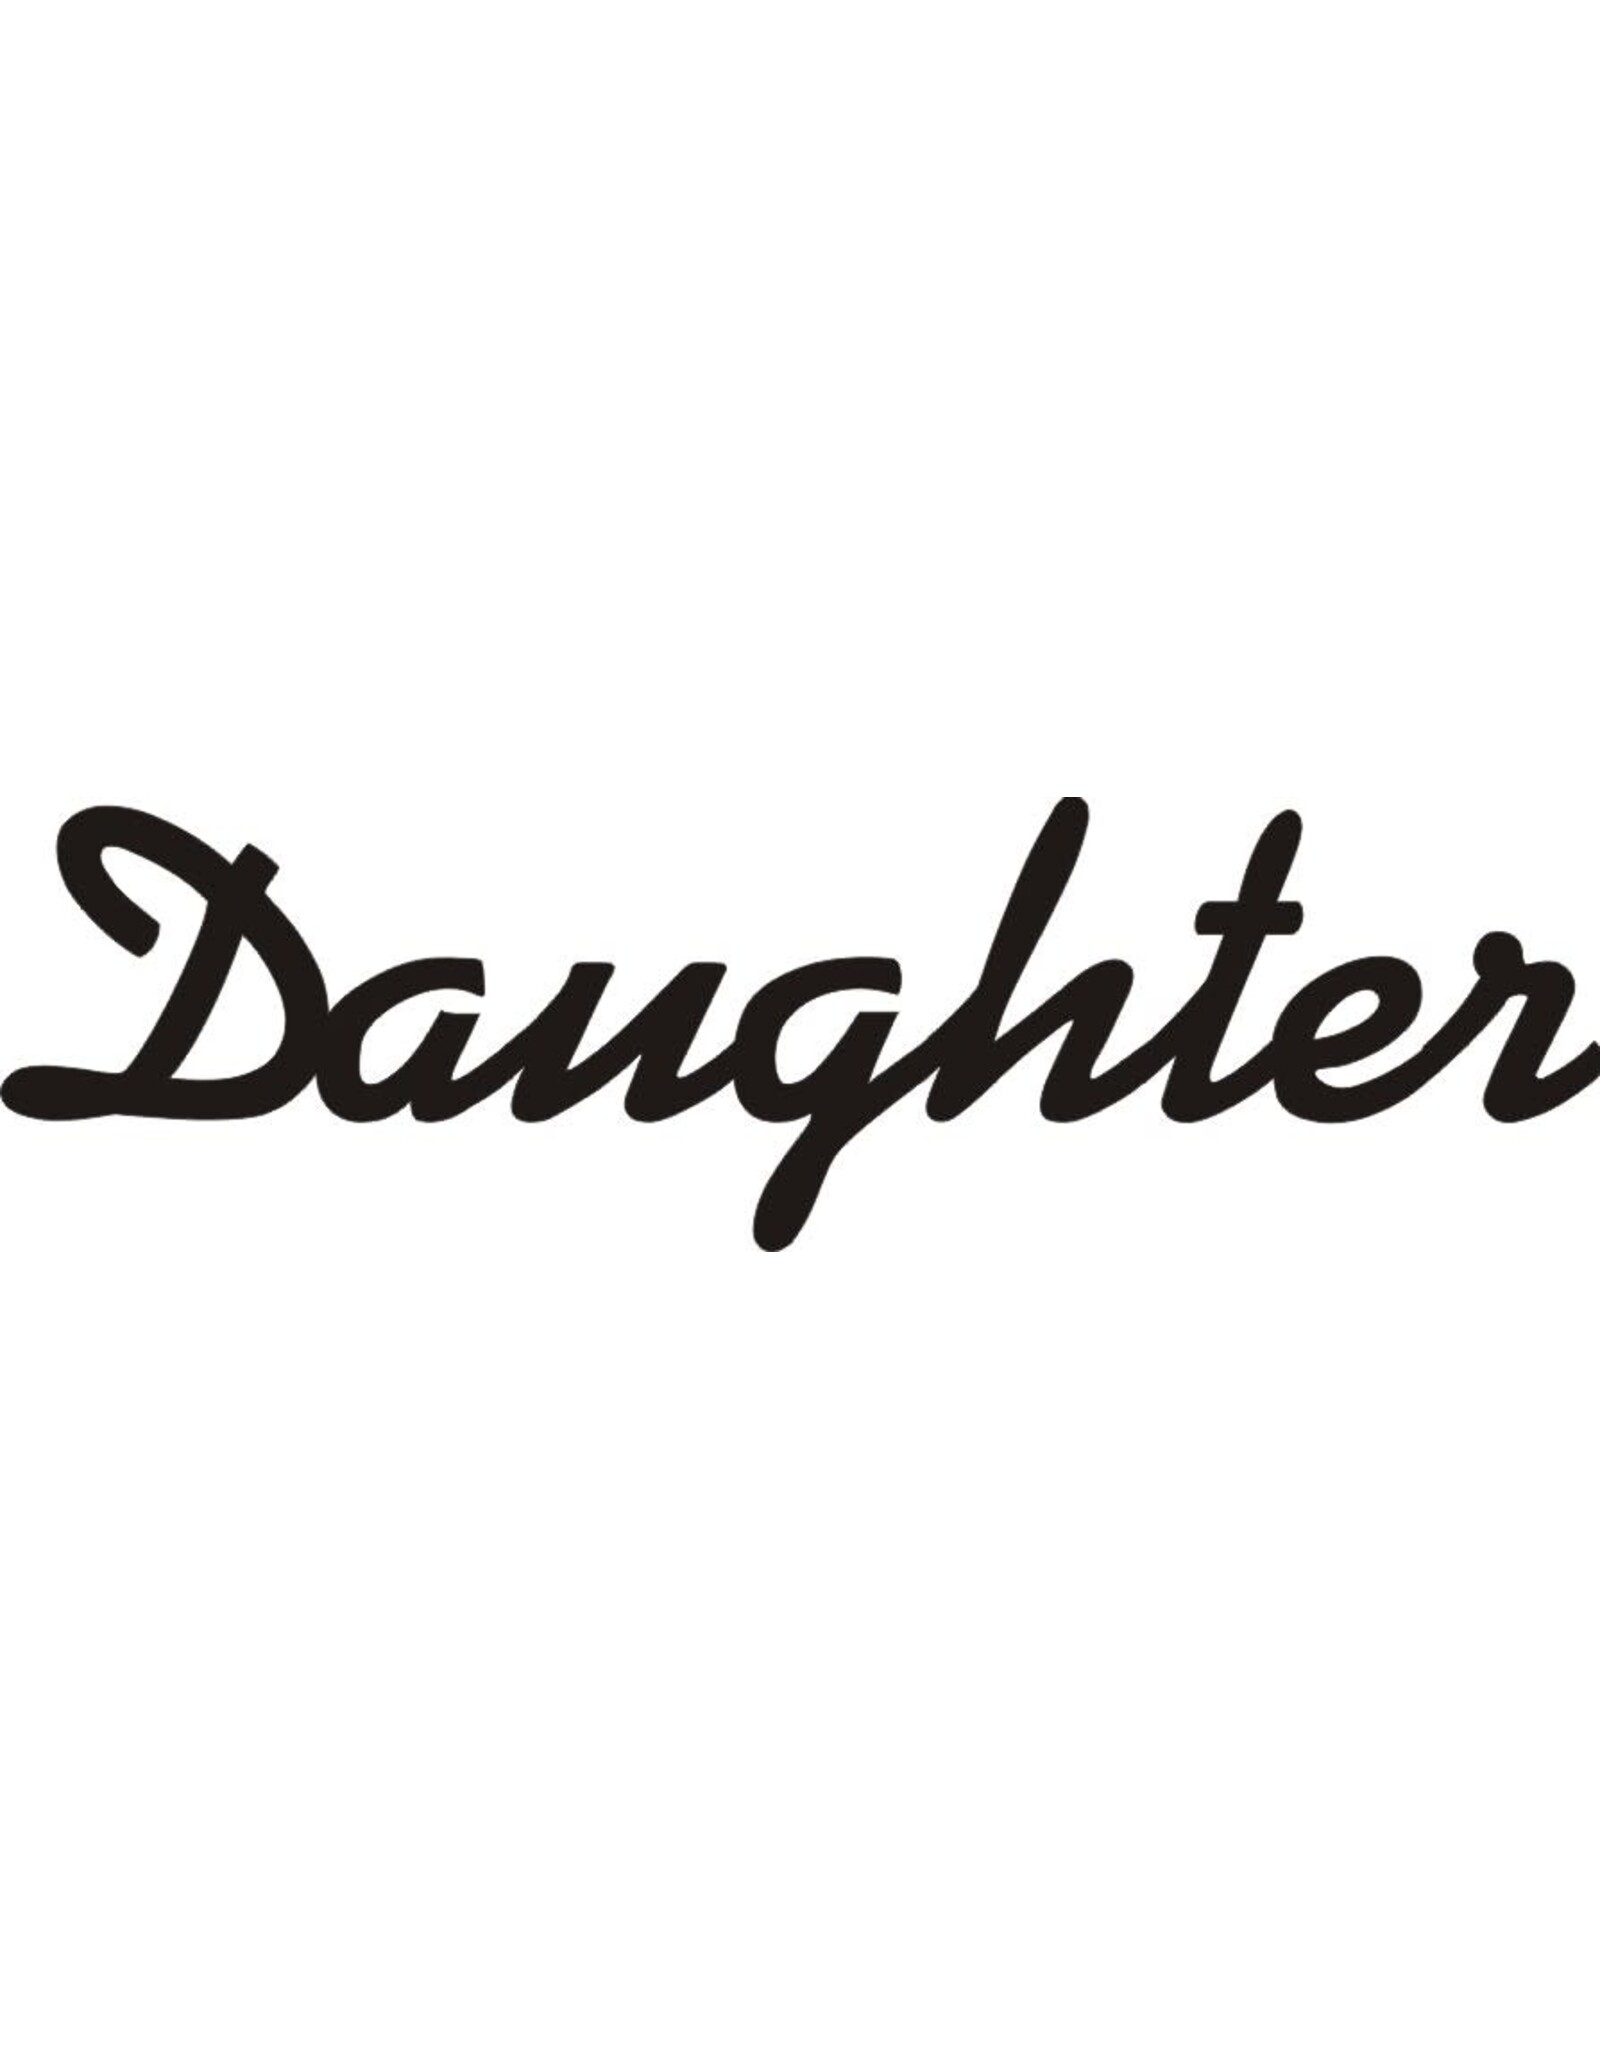 Daughter mini banner